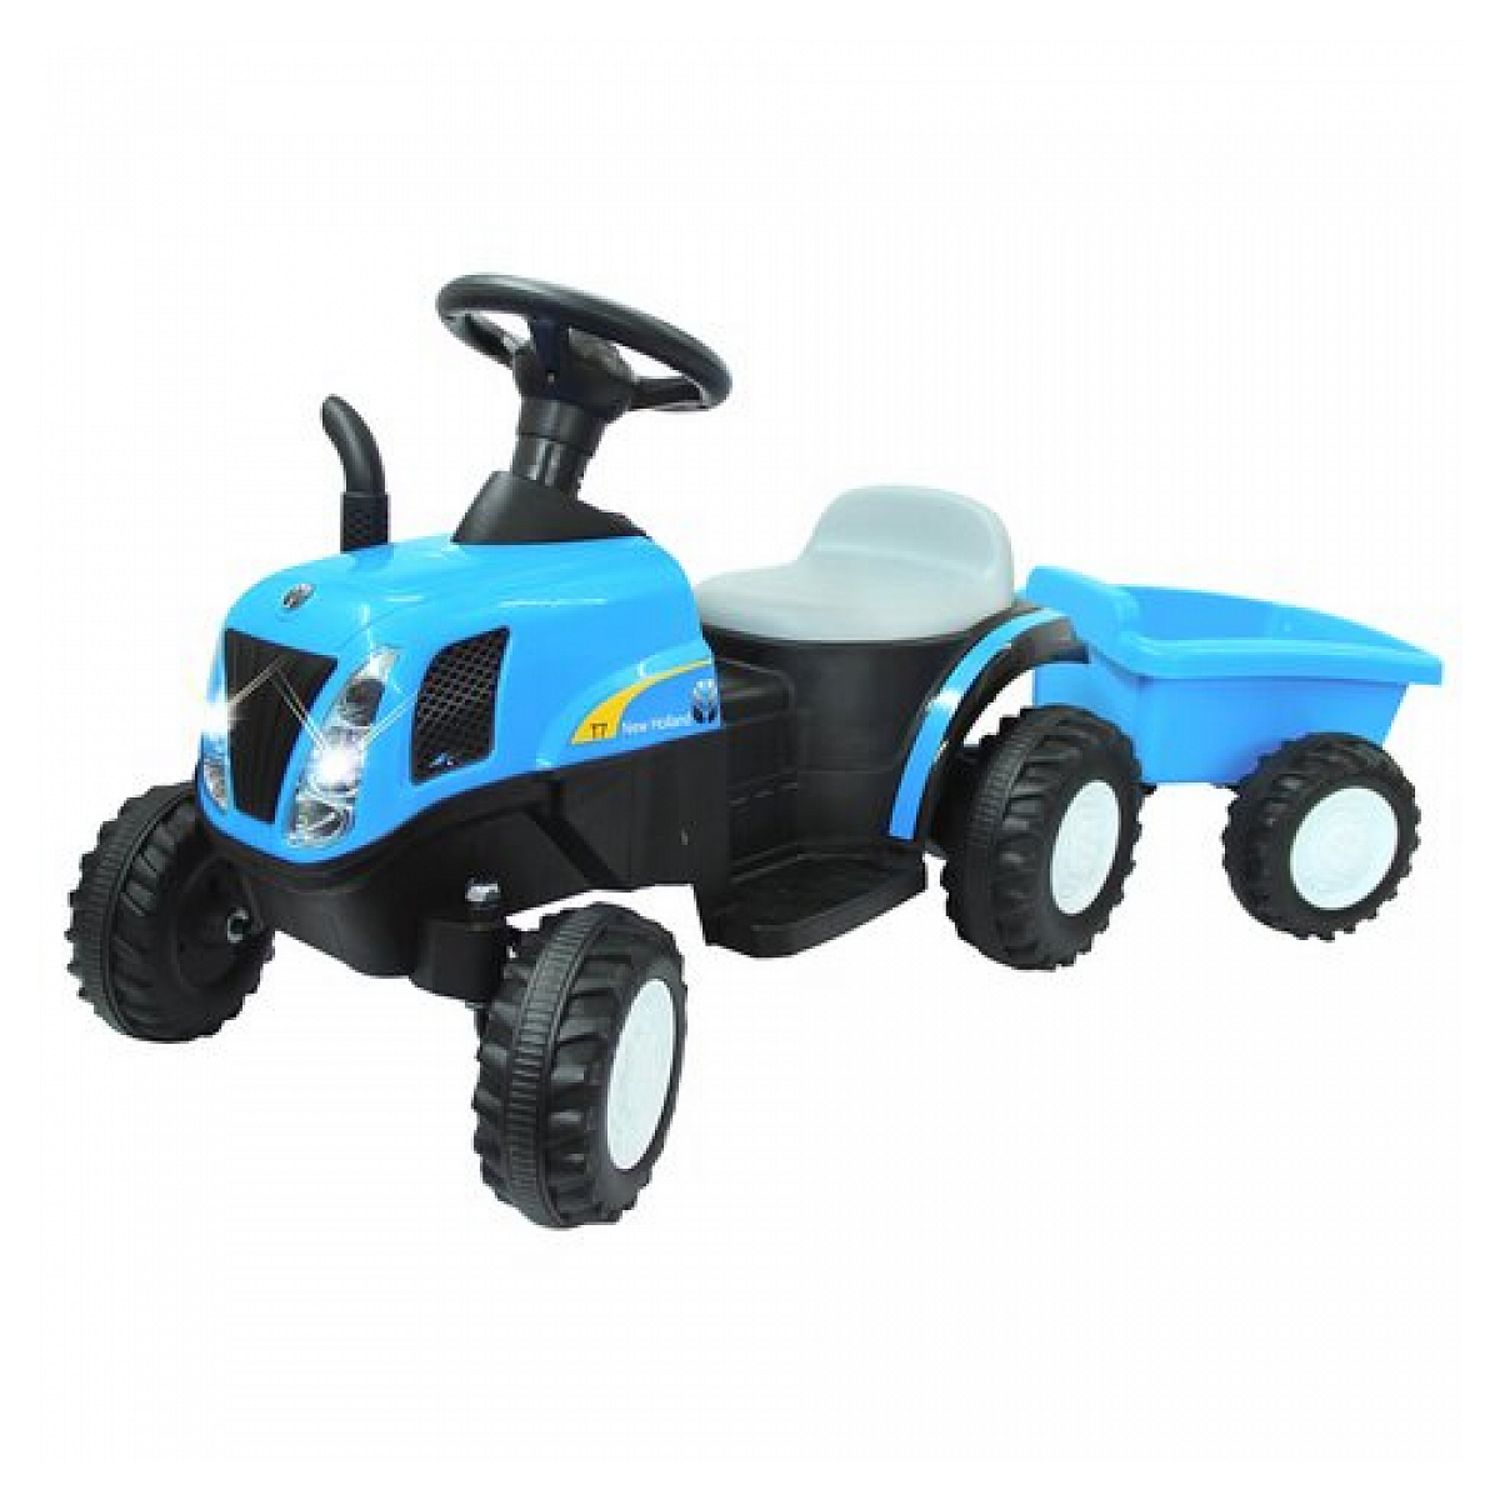 Tracteur électrique avec remorque 22W pour Enfant 3km/h